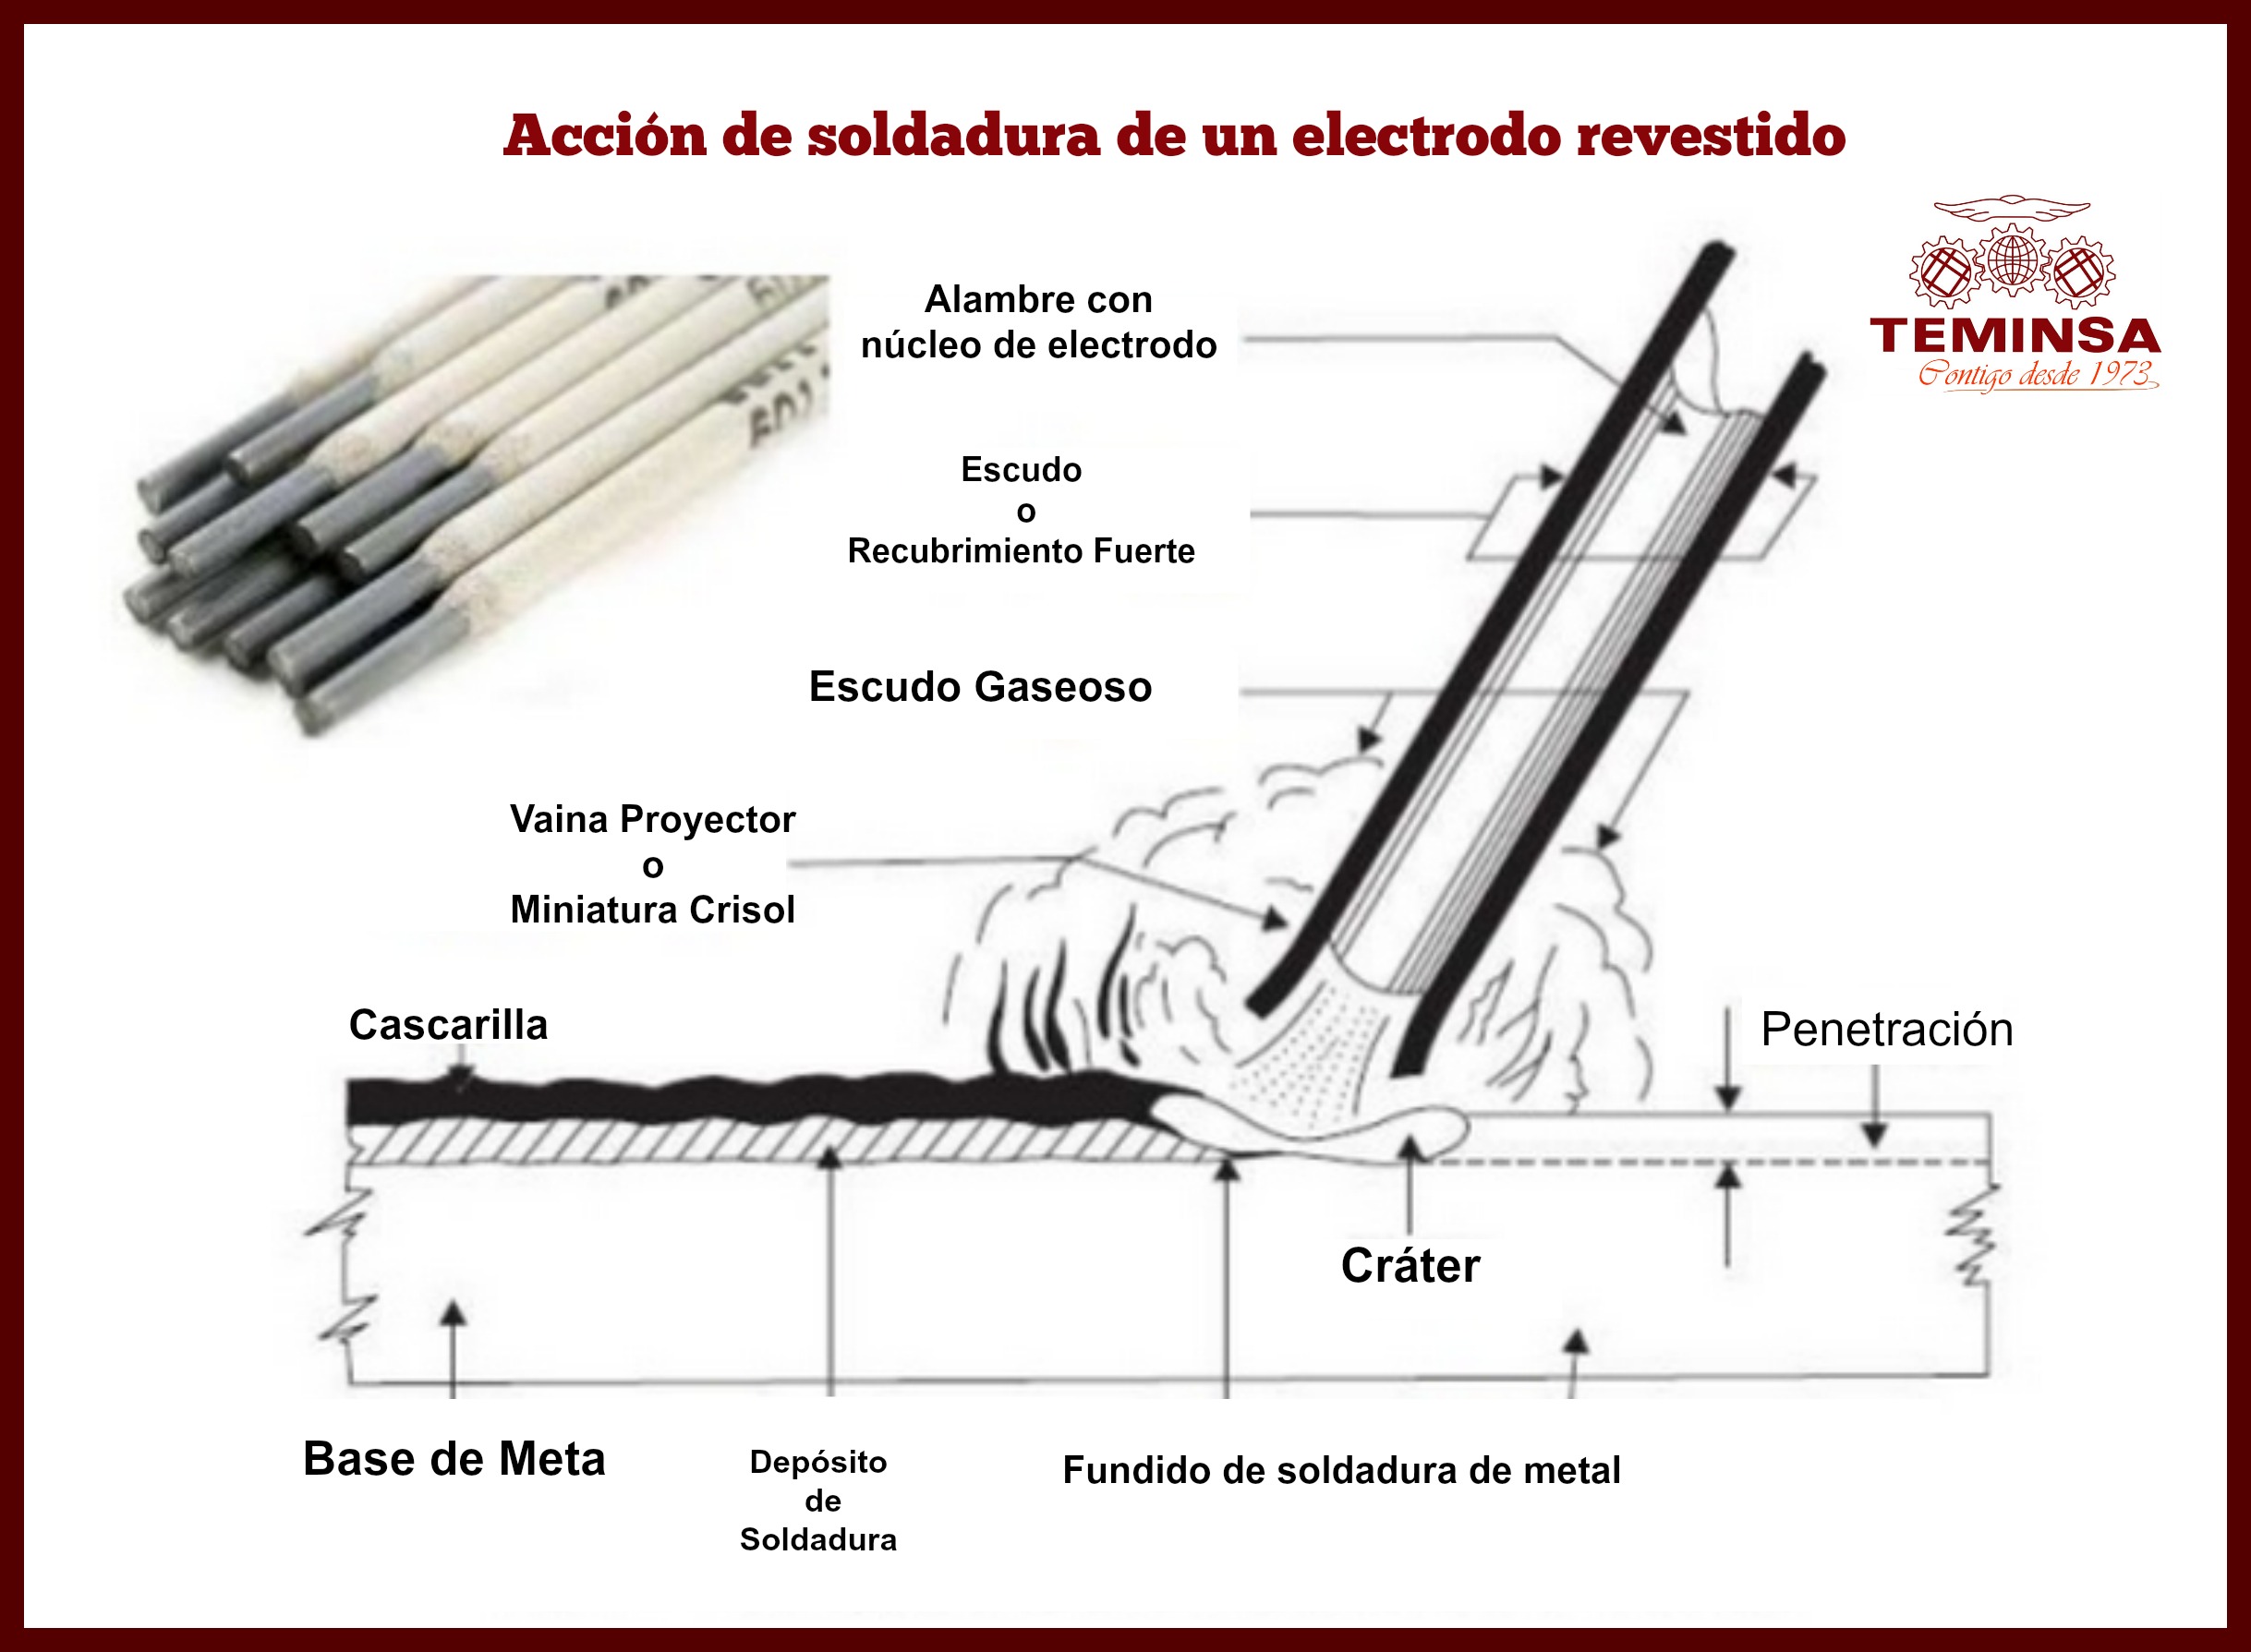 Electrodos en Soldadura: Cómo se Clasifican y Para Qué se Usan